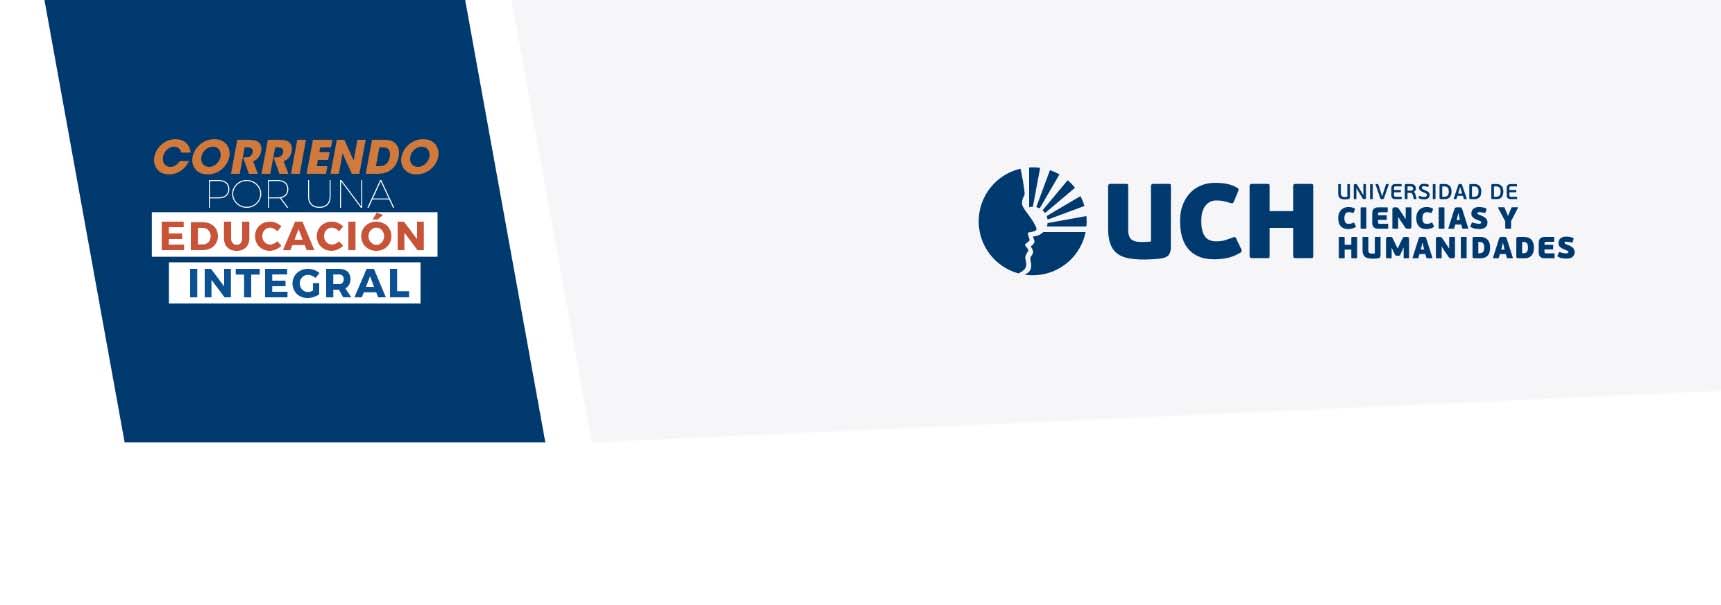 REGLAMENTO DE LA II EDICIÓN. CARRERA UCH 10K 2016 12 de junio del 2016 1. Organización: La Universidad de Ciencias y Humanidades (UCH) realiza la II edición de la carrera pedestre UCH10K 2016.